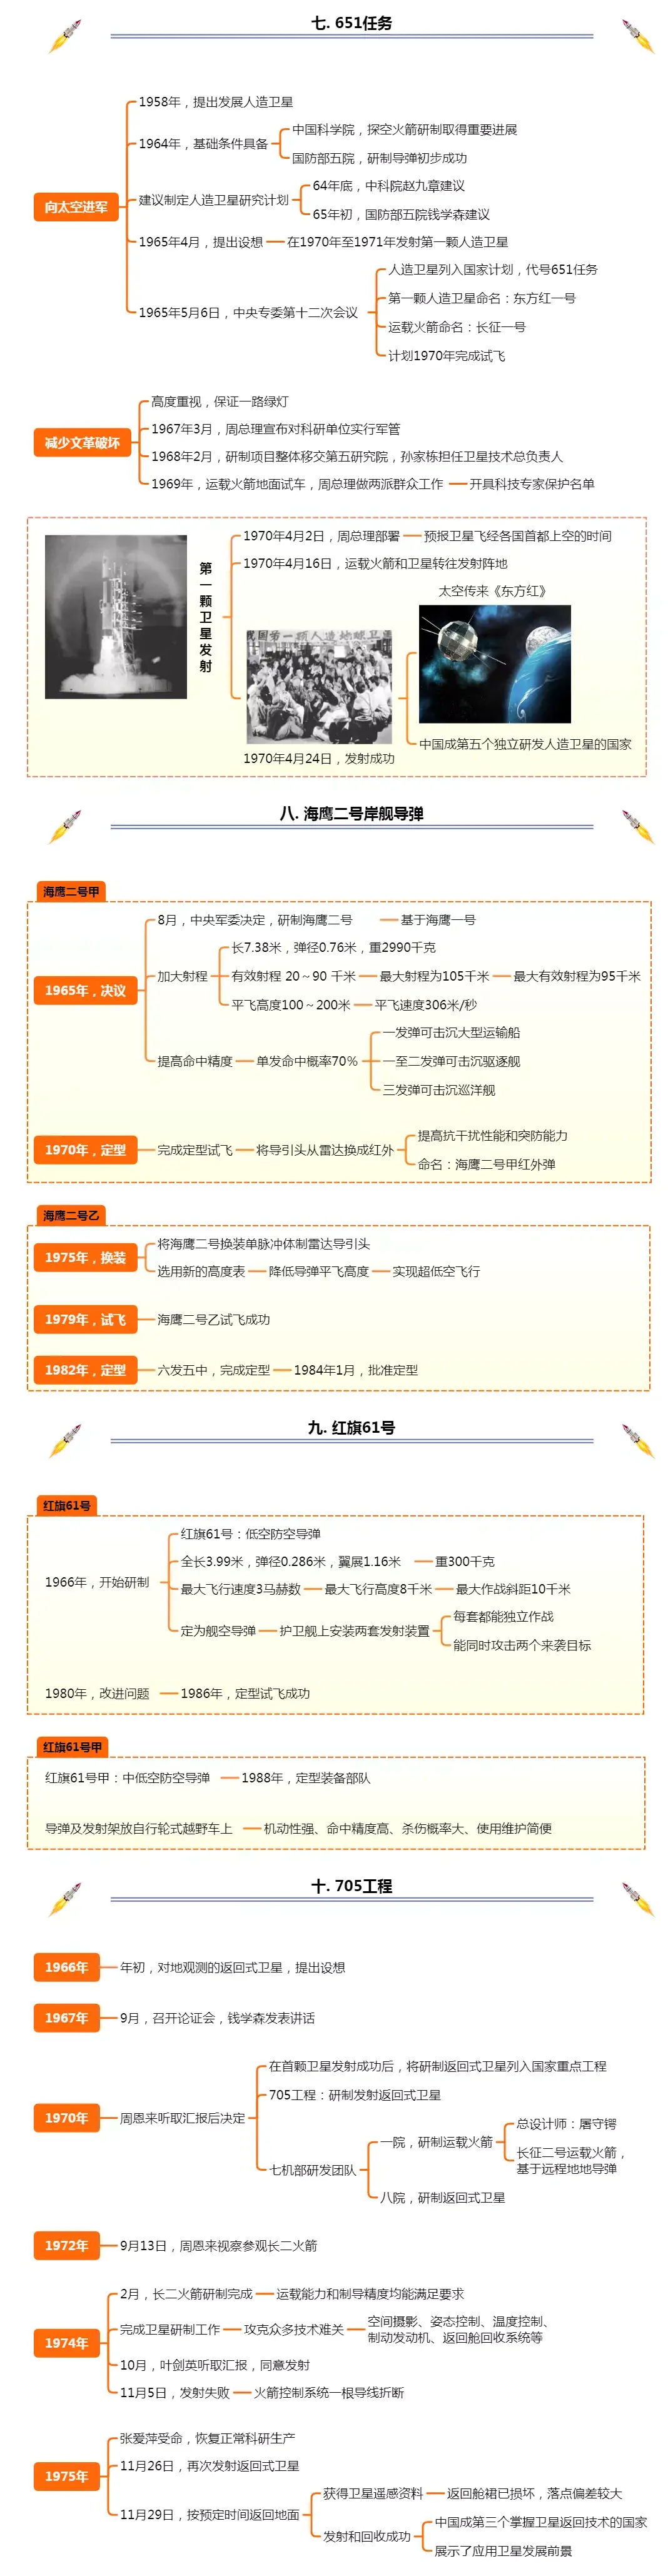 中国航天历程表格图片